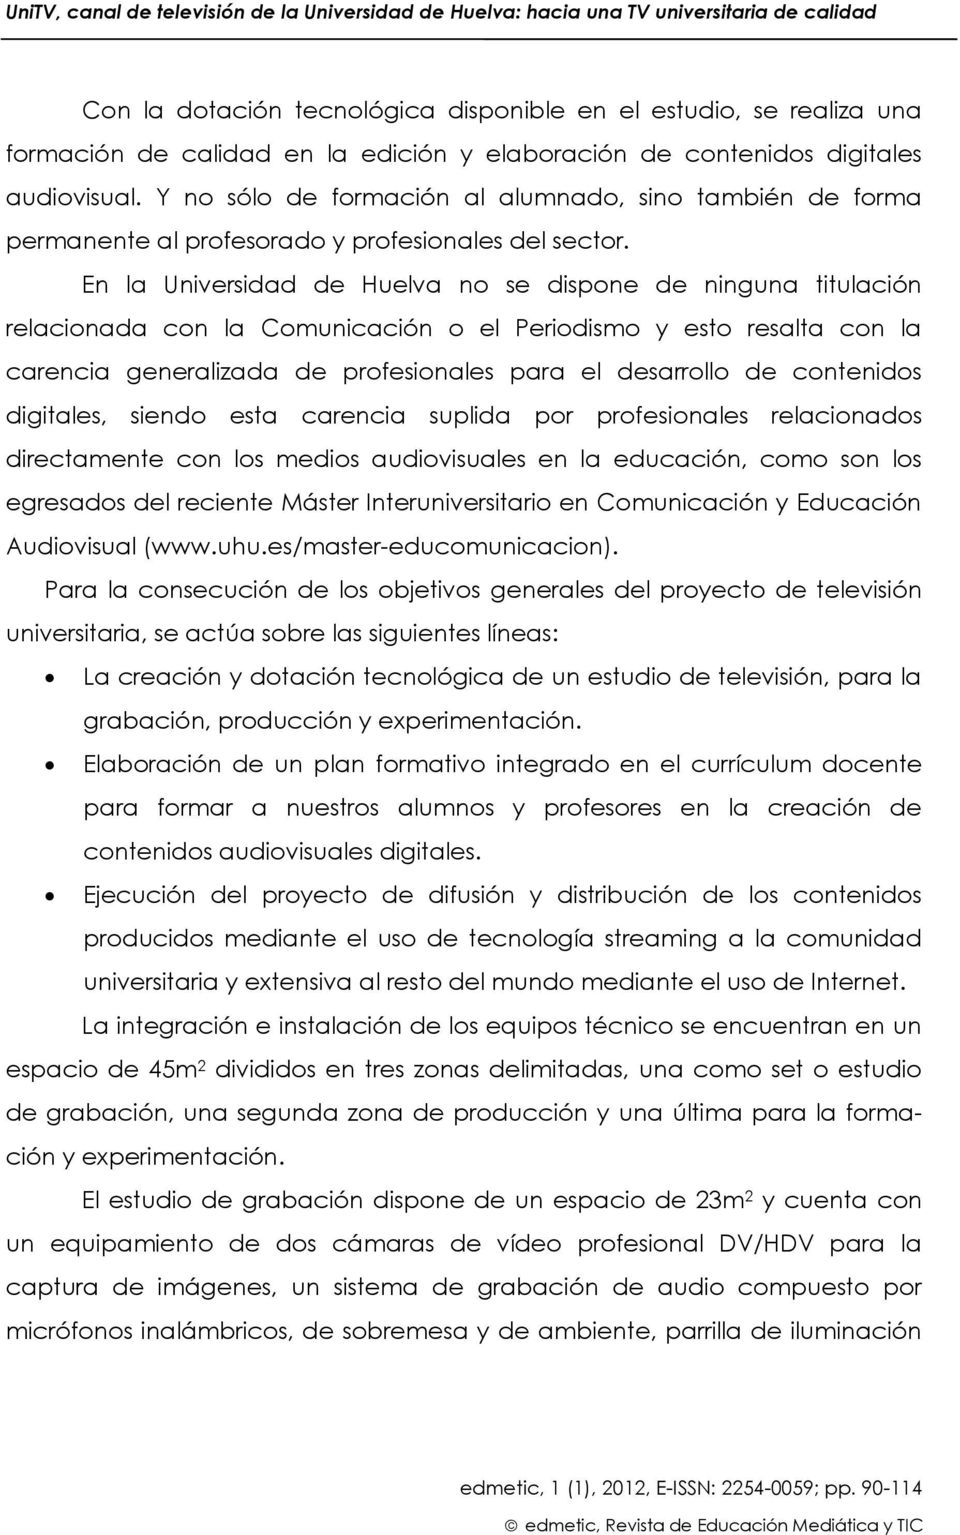 En la Universidad de Huelva no se dispone de ninguna titulación relacionada con la Comunicación o el Periodismo y esto resalta con la carencia generalizada de profesionales para el desarrollo de